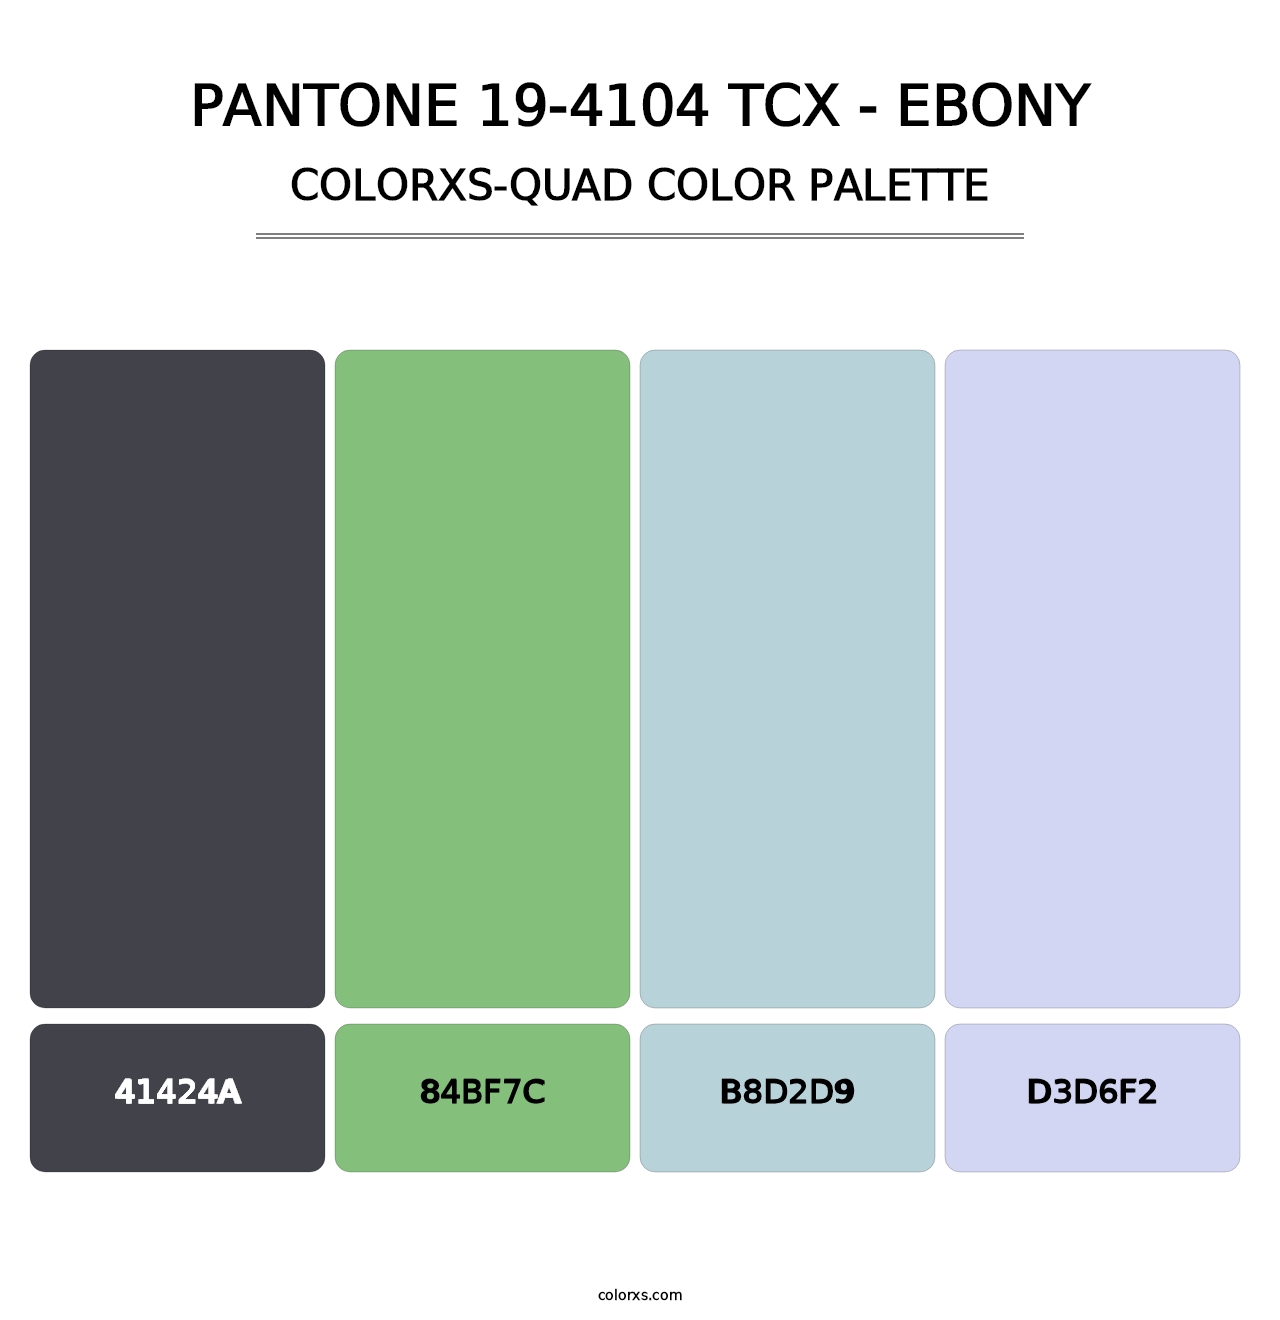 PANTONE 19-4104 TCX - Ebony - Colorxs Quad Palette